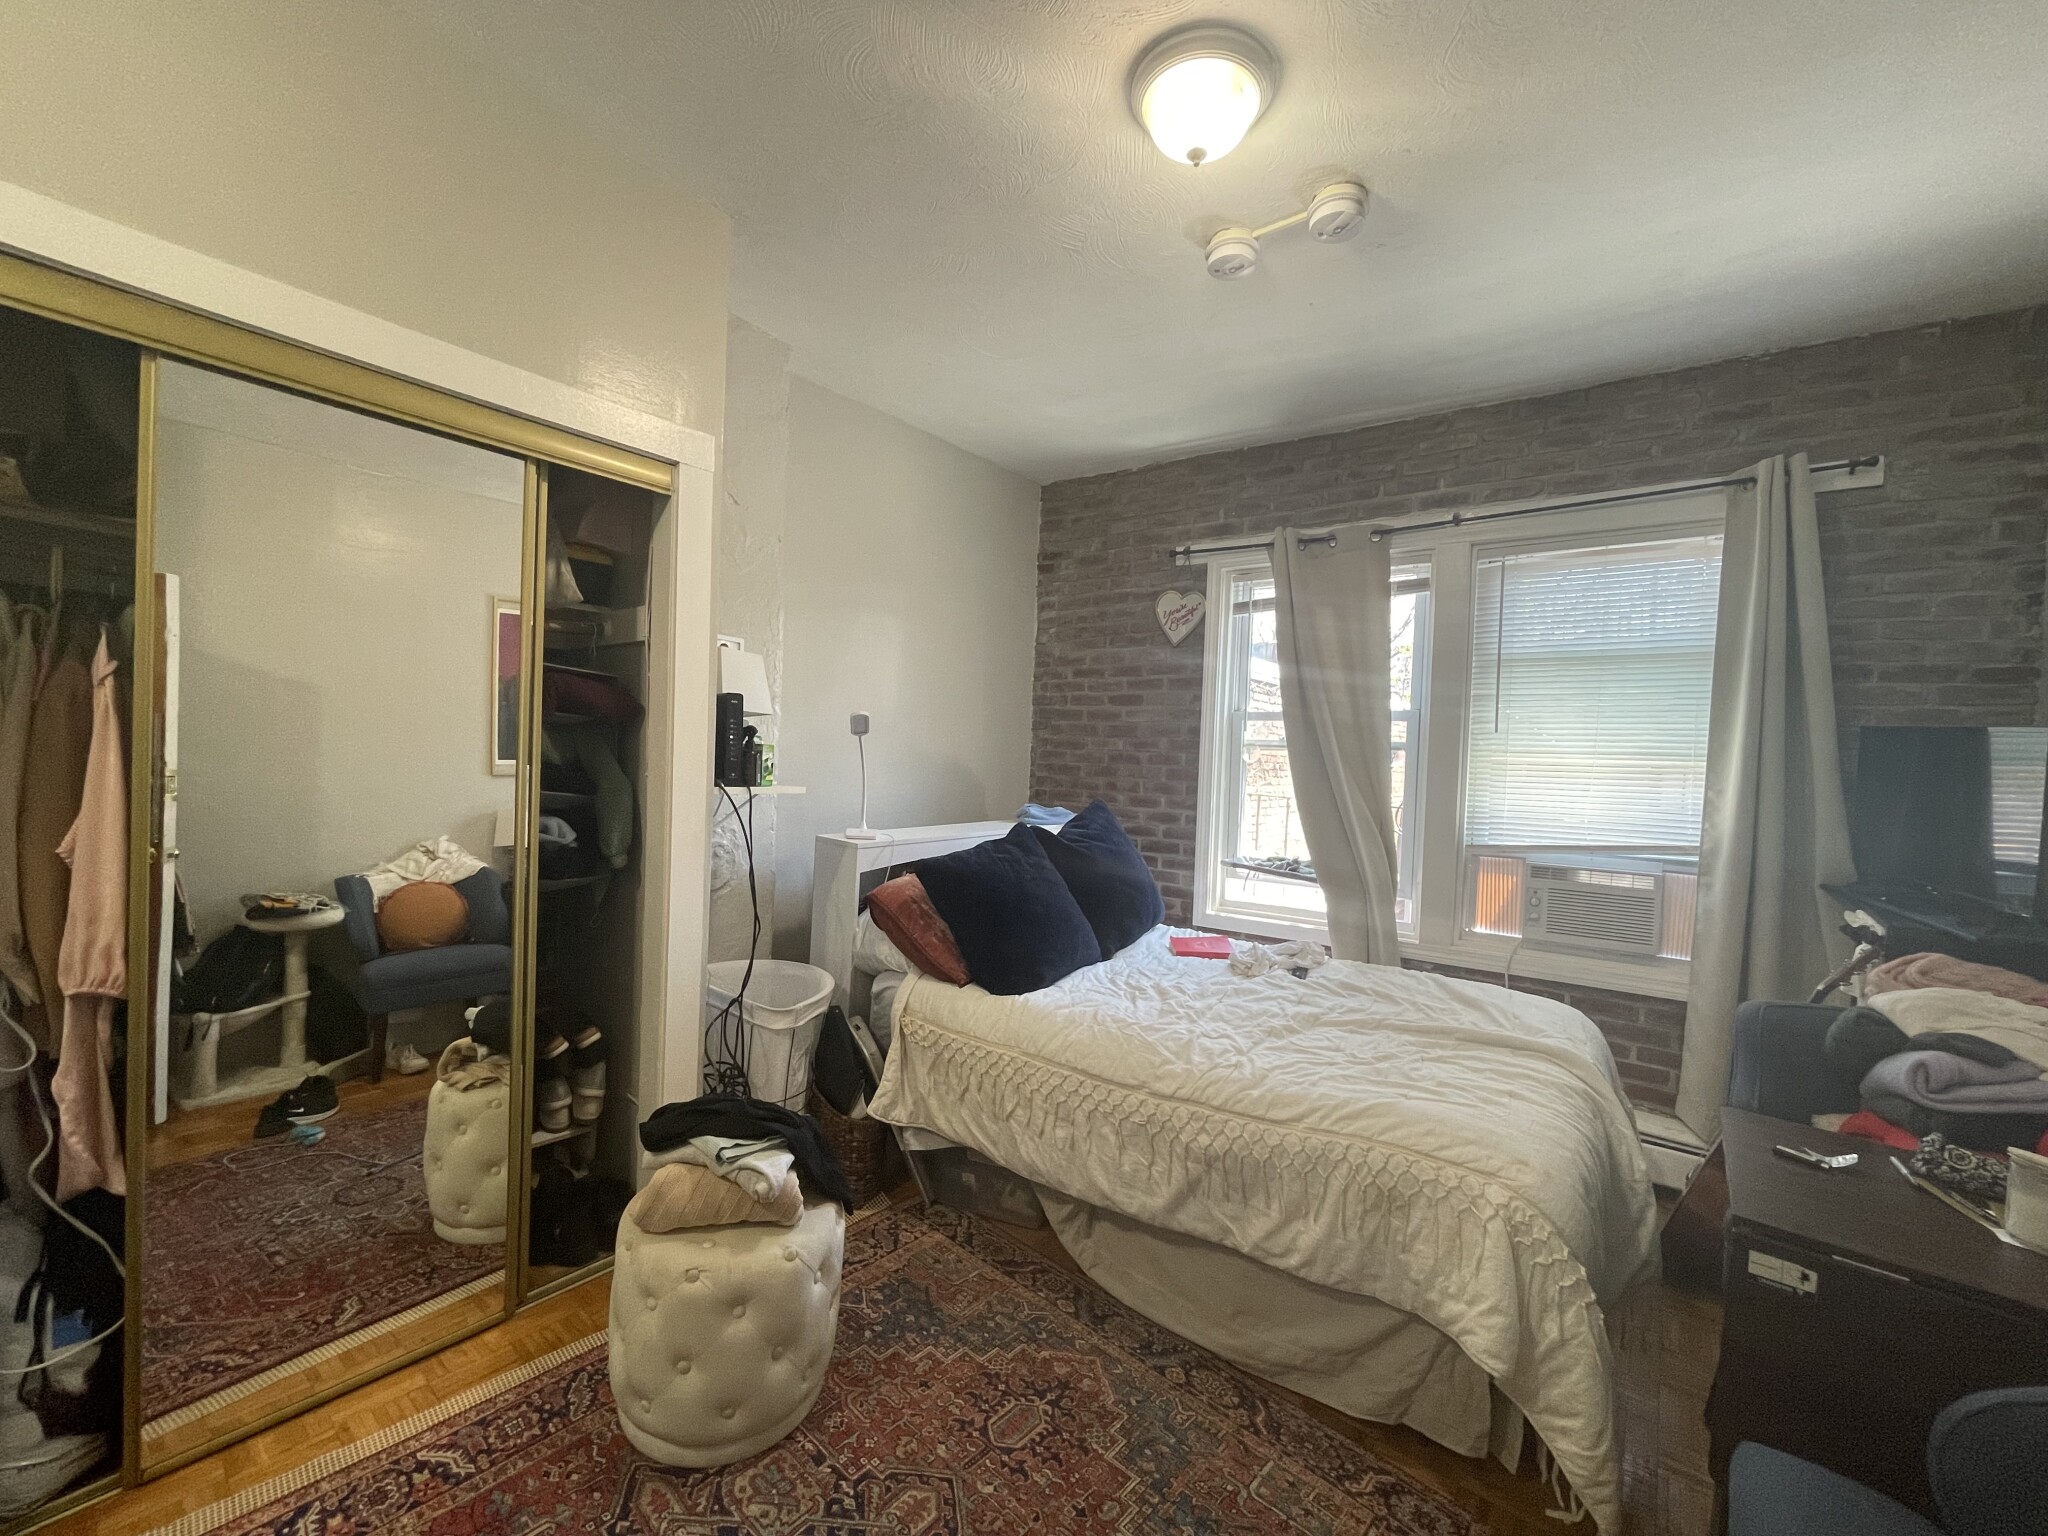 Photos of apartment on Nashua St.,Boston MA 02114